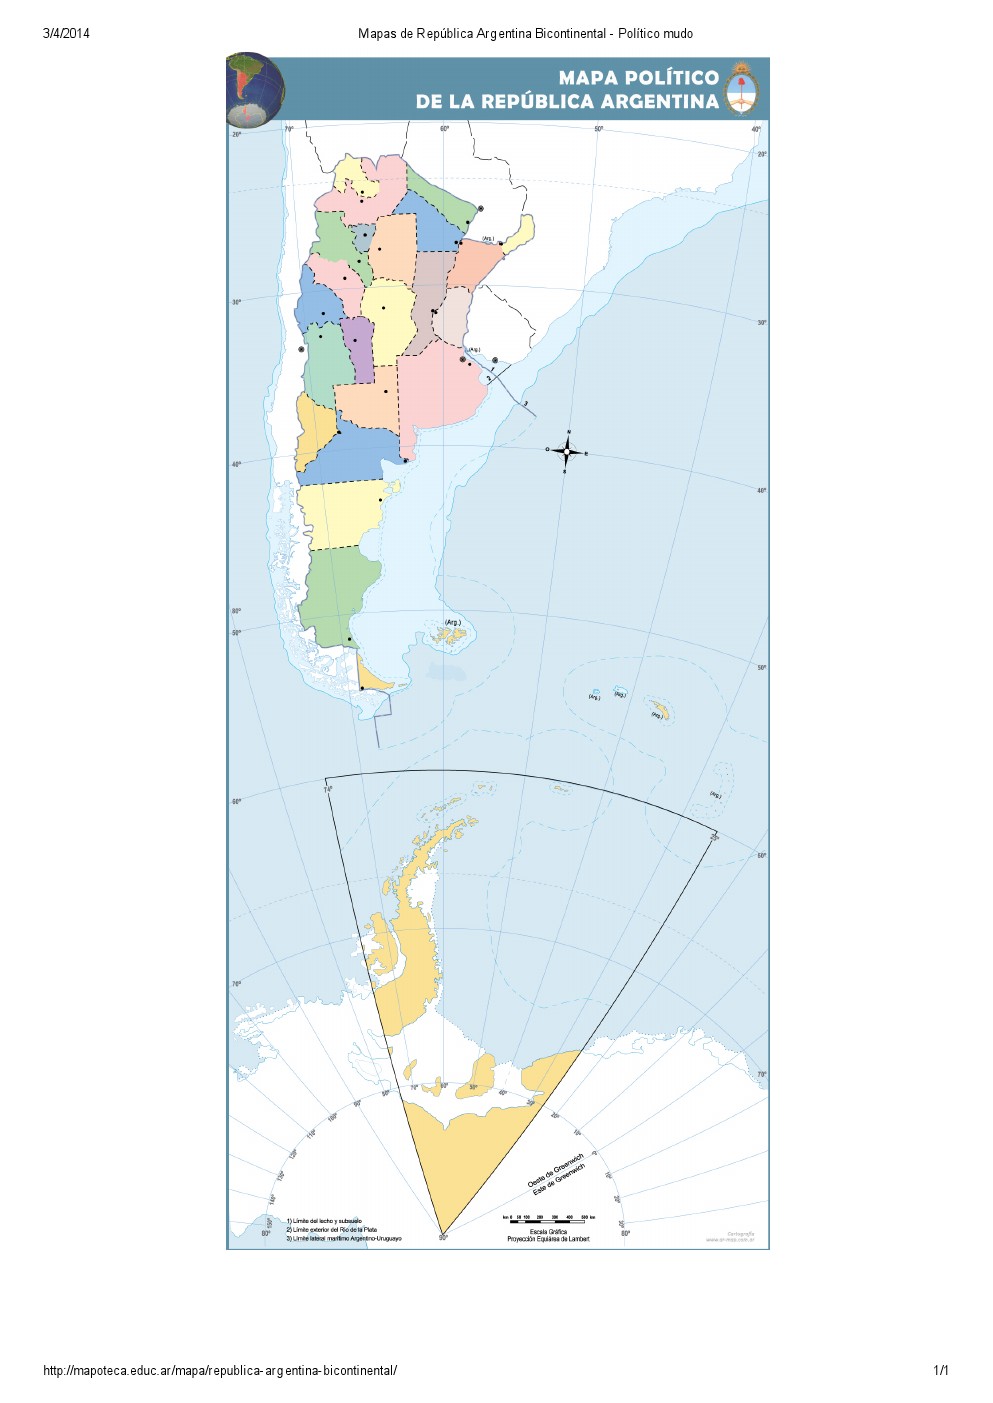 Mapa mudo de provincias de Argentina bicontinental. Mapoteca de Educ.ar